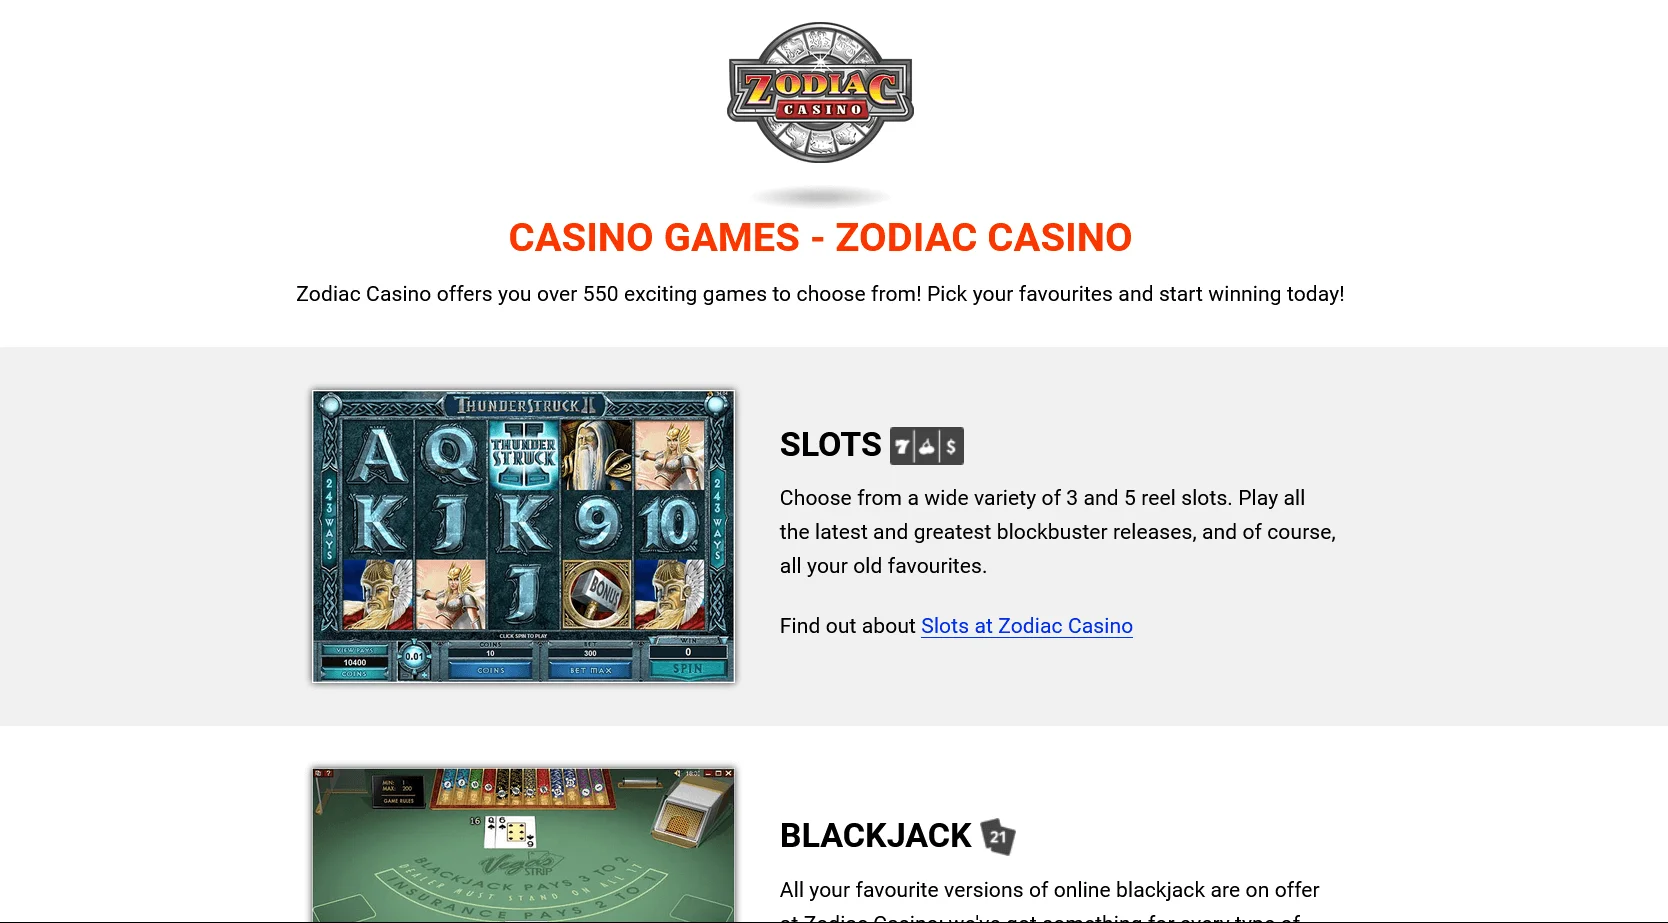 La legalidad Zodiac Casino